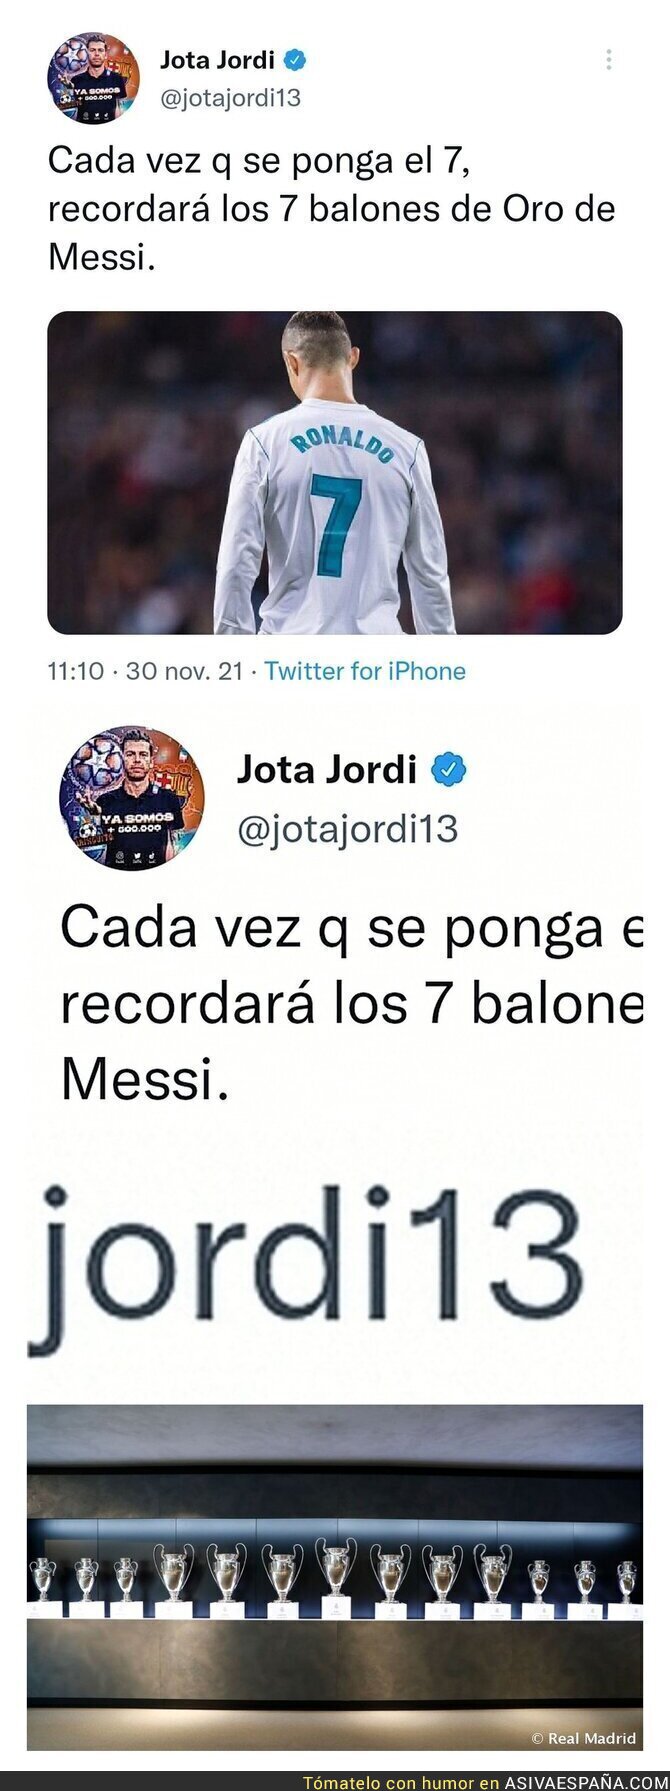 El ridículo monumental de Jota Jordi intentando reírse de Cristiano Ronaldo por el Balón de Oro